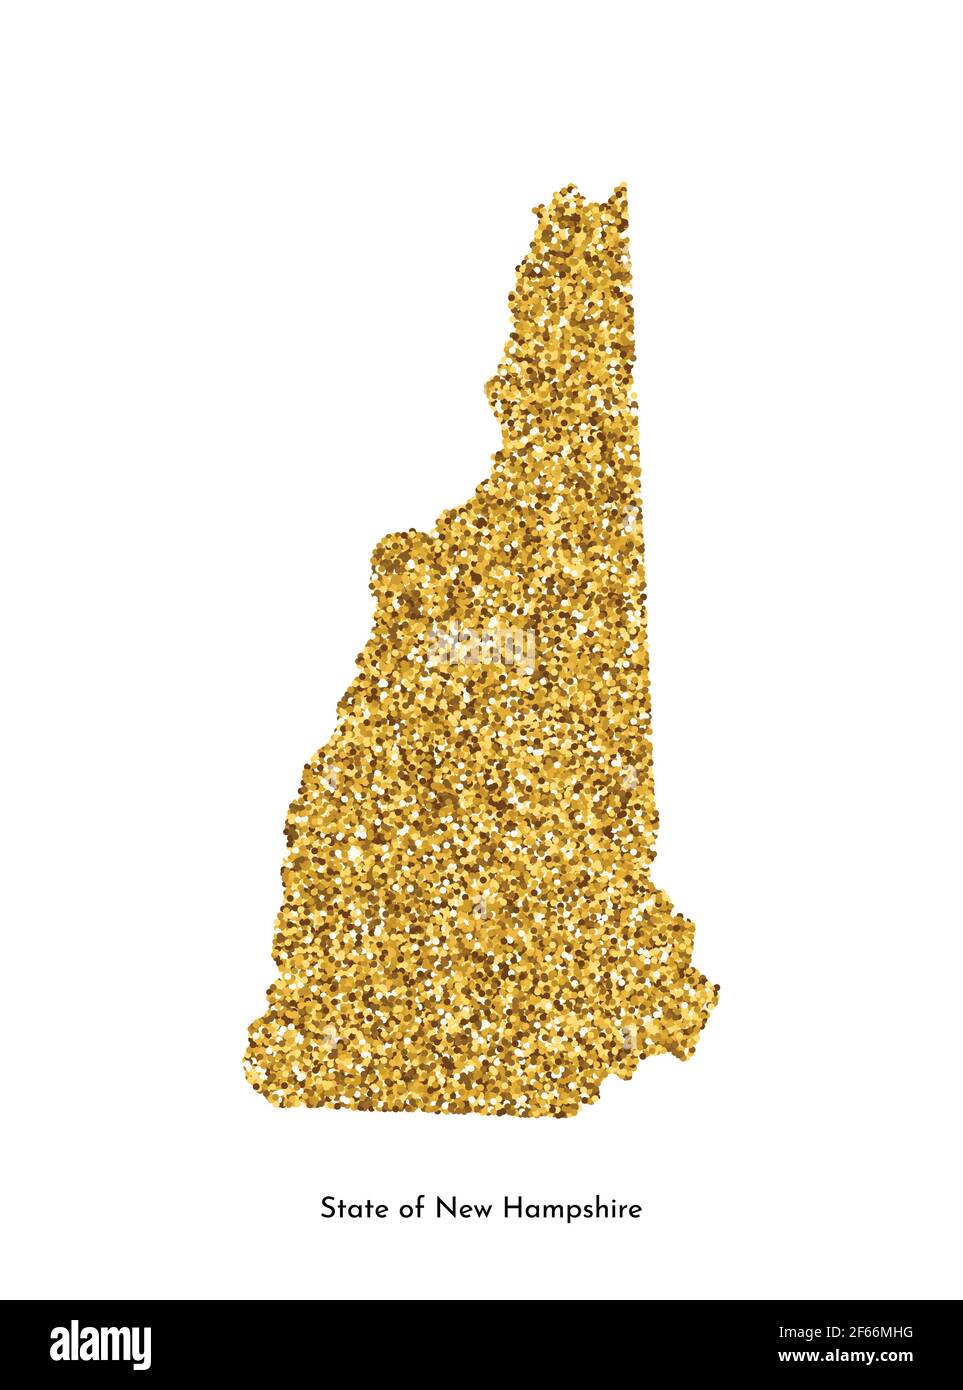 Illustration vectorielle isolée avec carte simplifiée de l'État du New Hampshire (USA). Texture pailletée or brillant. Décoration modèle lumineux de vacances. Illustration de Vecteur